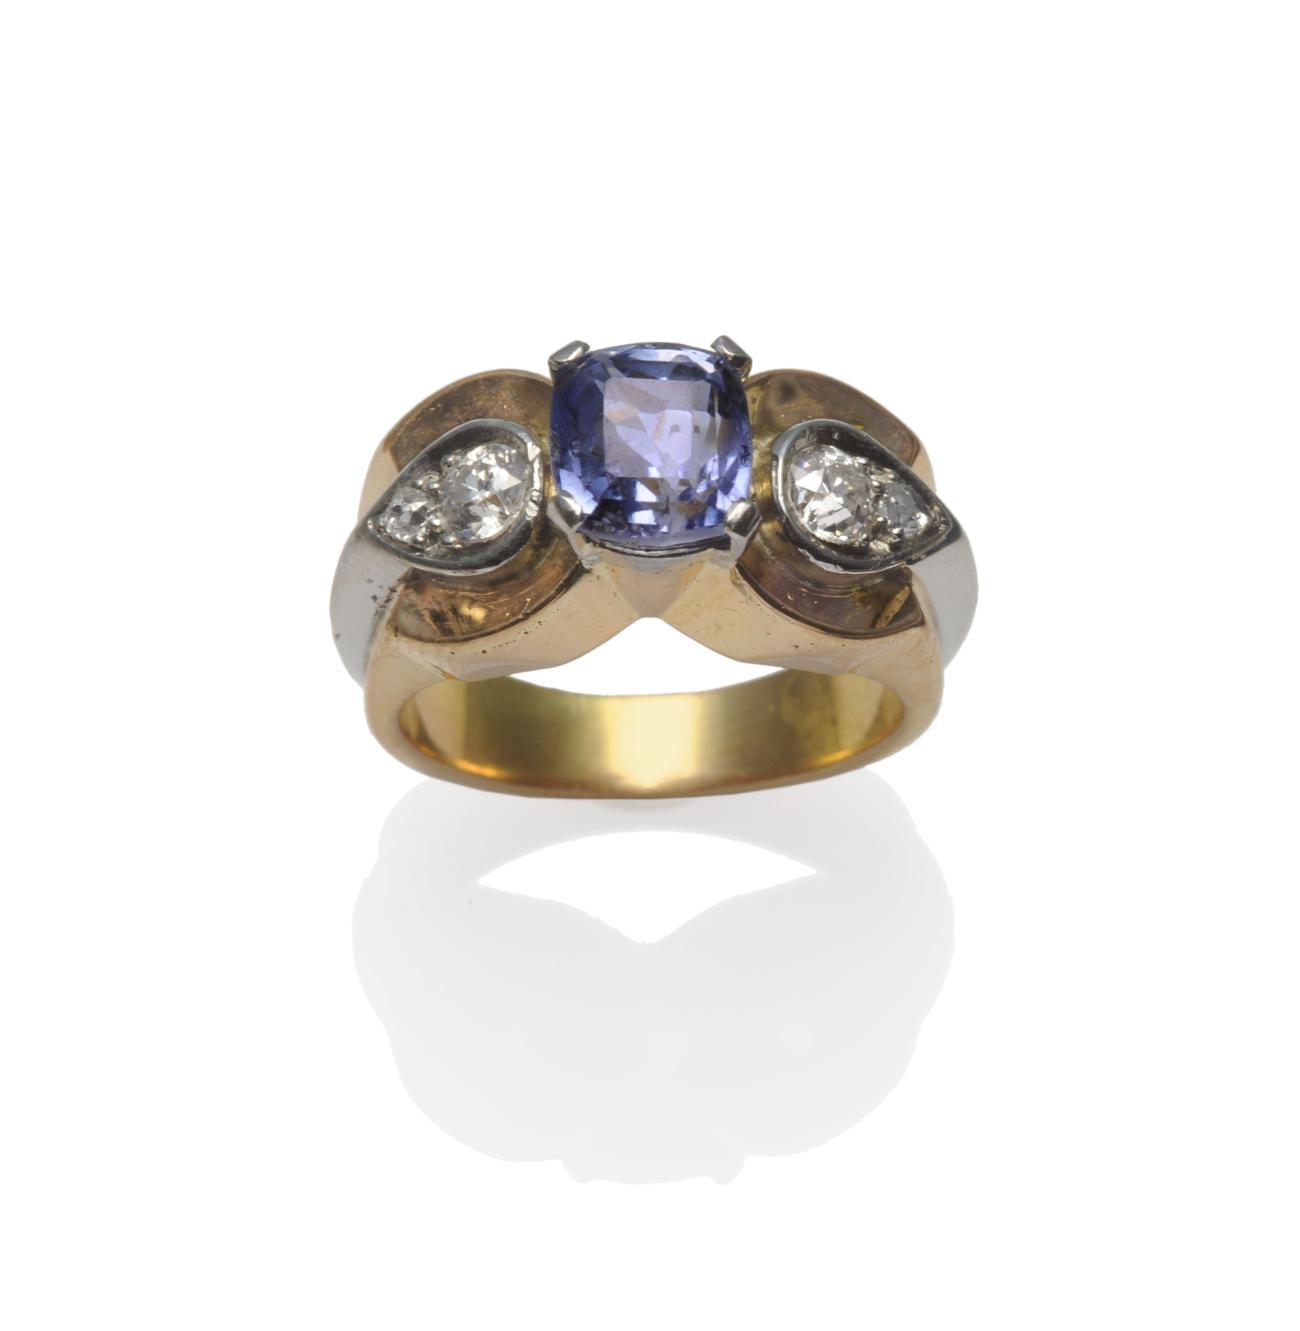 A Sapphire and Diamond Ring, circa 1940, a cushion cut light blue sapphire in a white claw setting,